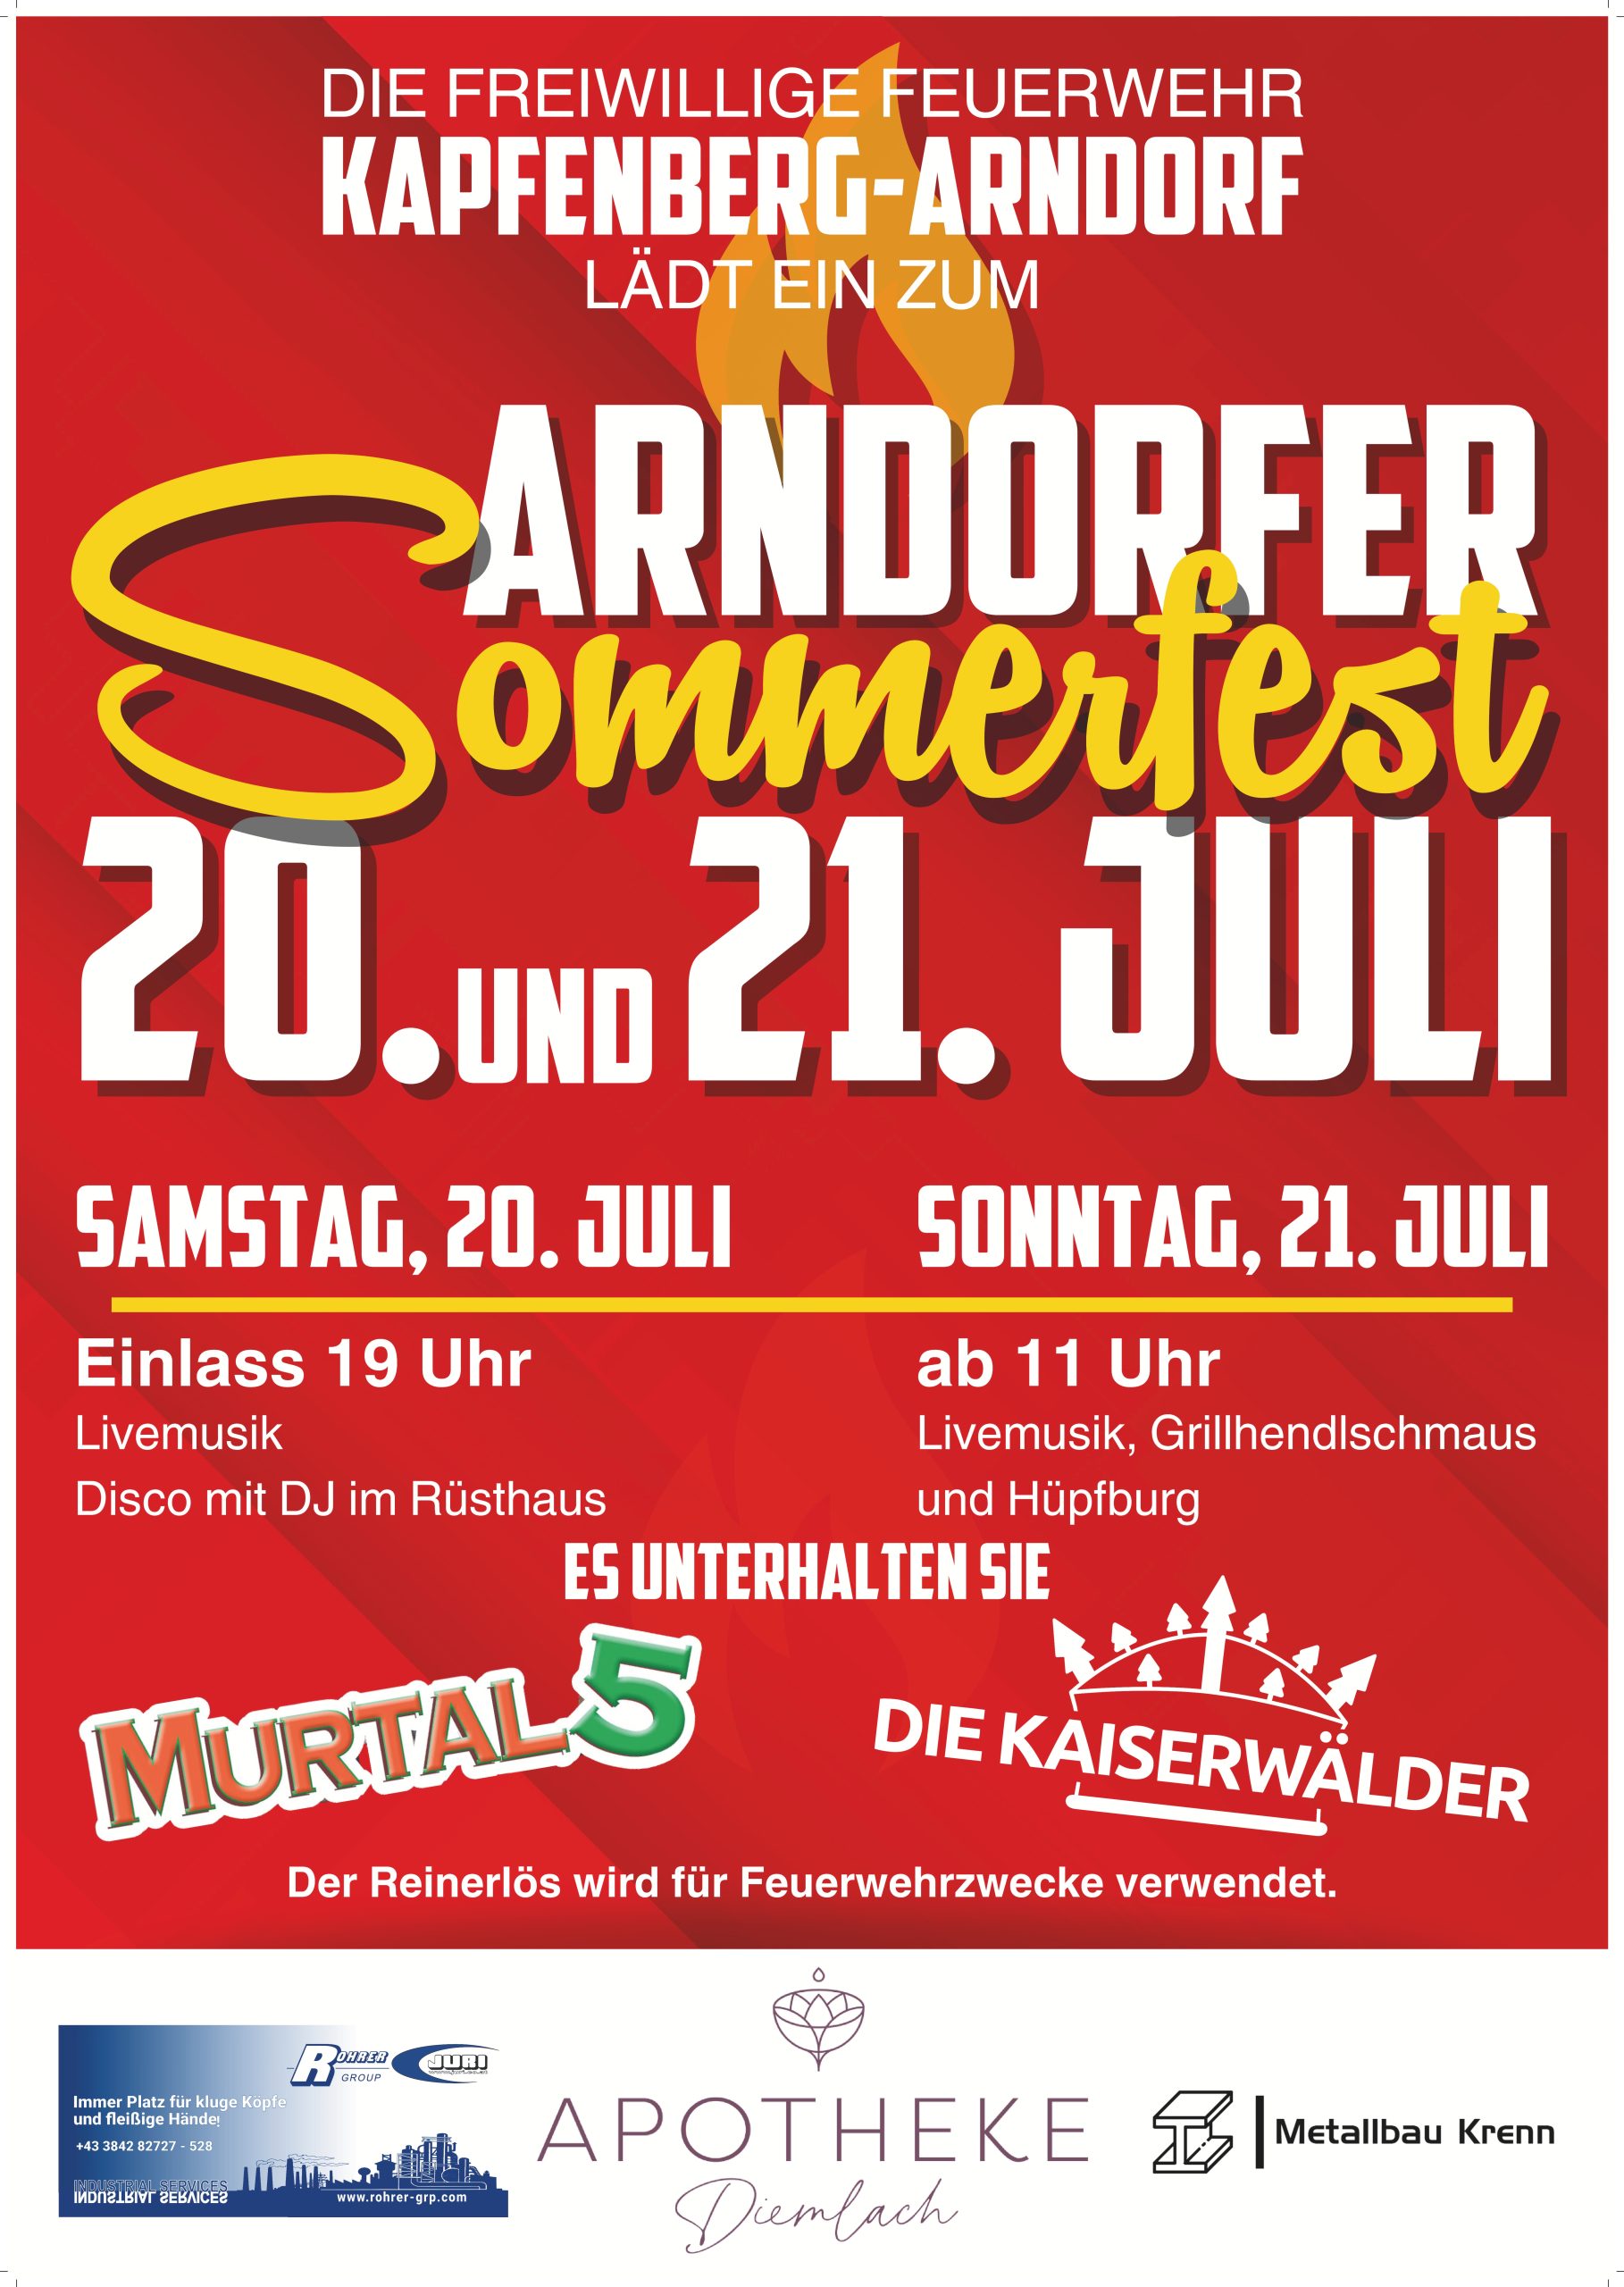 Arndorfer Sommerfest